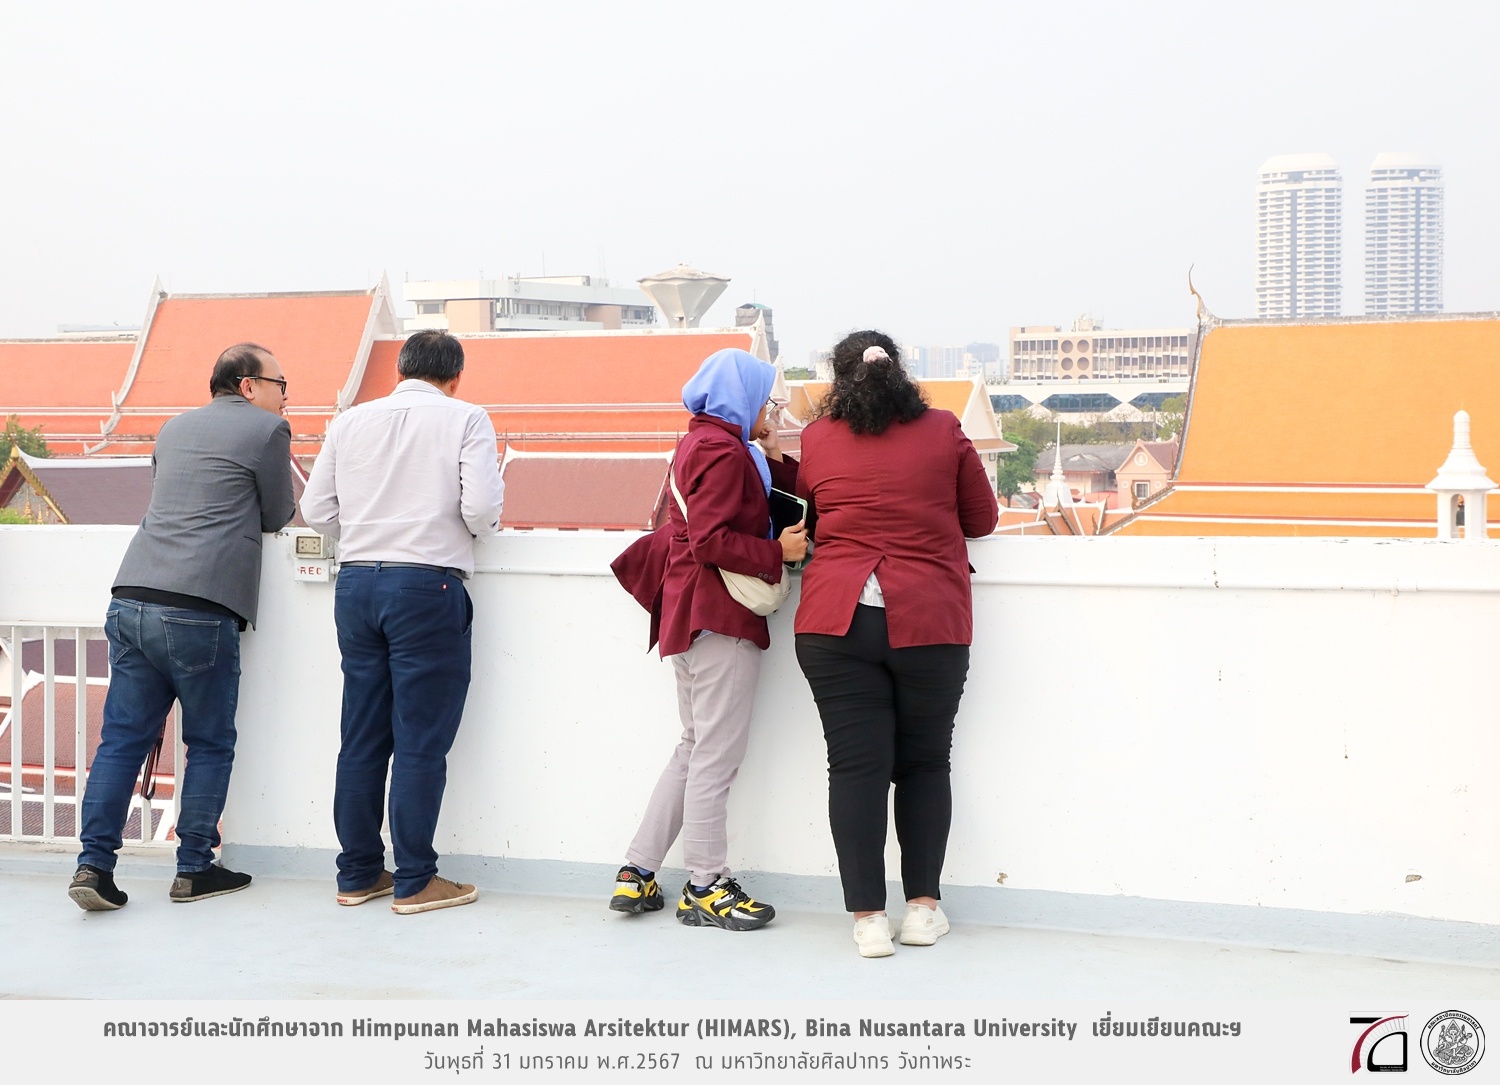 คณาจารย์และนักศึกษาจาก Himpunan Mahasiswa Arsitektur (HIMARS), Bina Nusantara University ประเทศอินโดนีเซียเยี่ยมเยียนคณะฯ